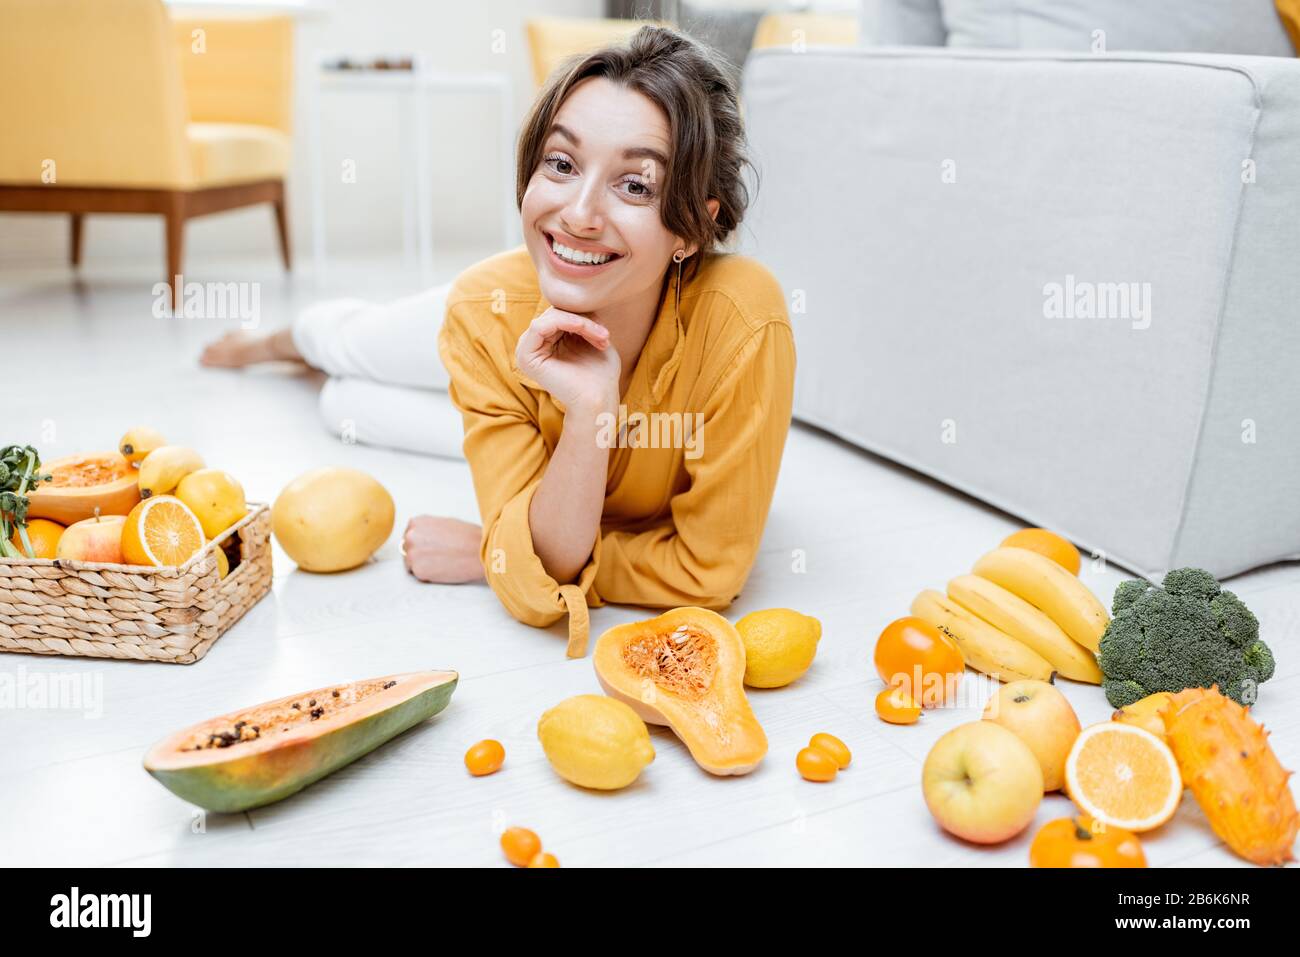 Ritratto di una giovane e allegra donna sdraiata con un sacco di frutta fresca e verdure sul pavimento a casa. Foto in giallo. Concetto di benessere, cibo sano e solitudine Foto Stock